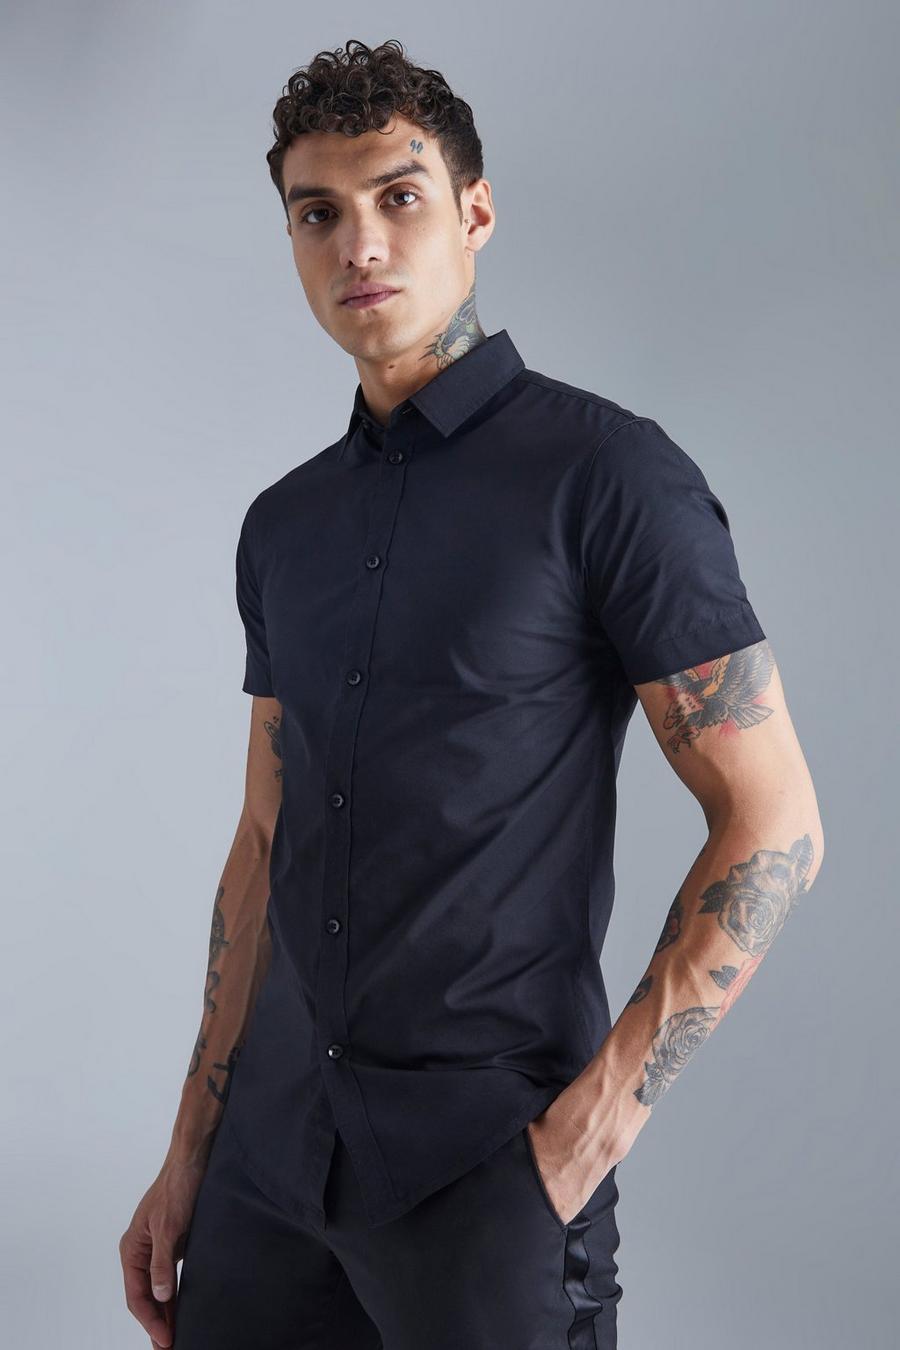 Black svart Short Sleeve Muscle Shirt